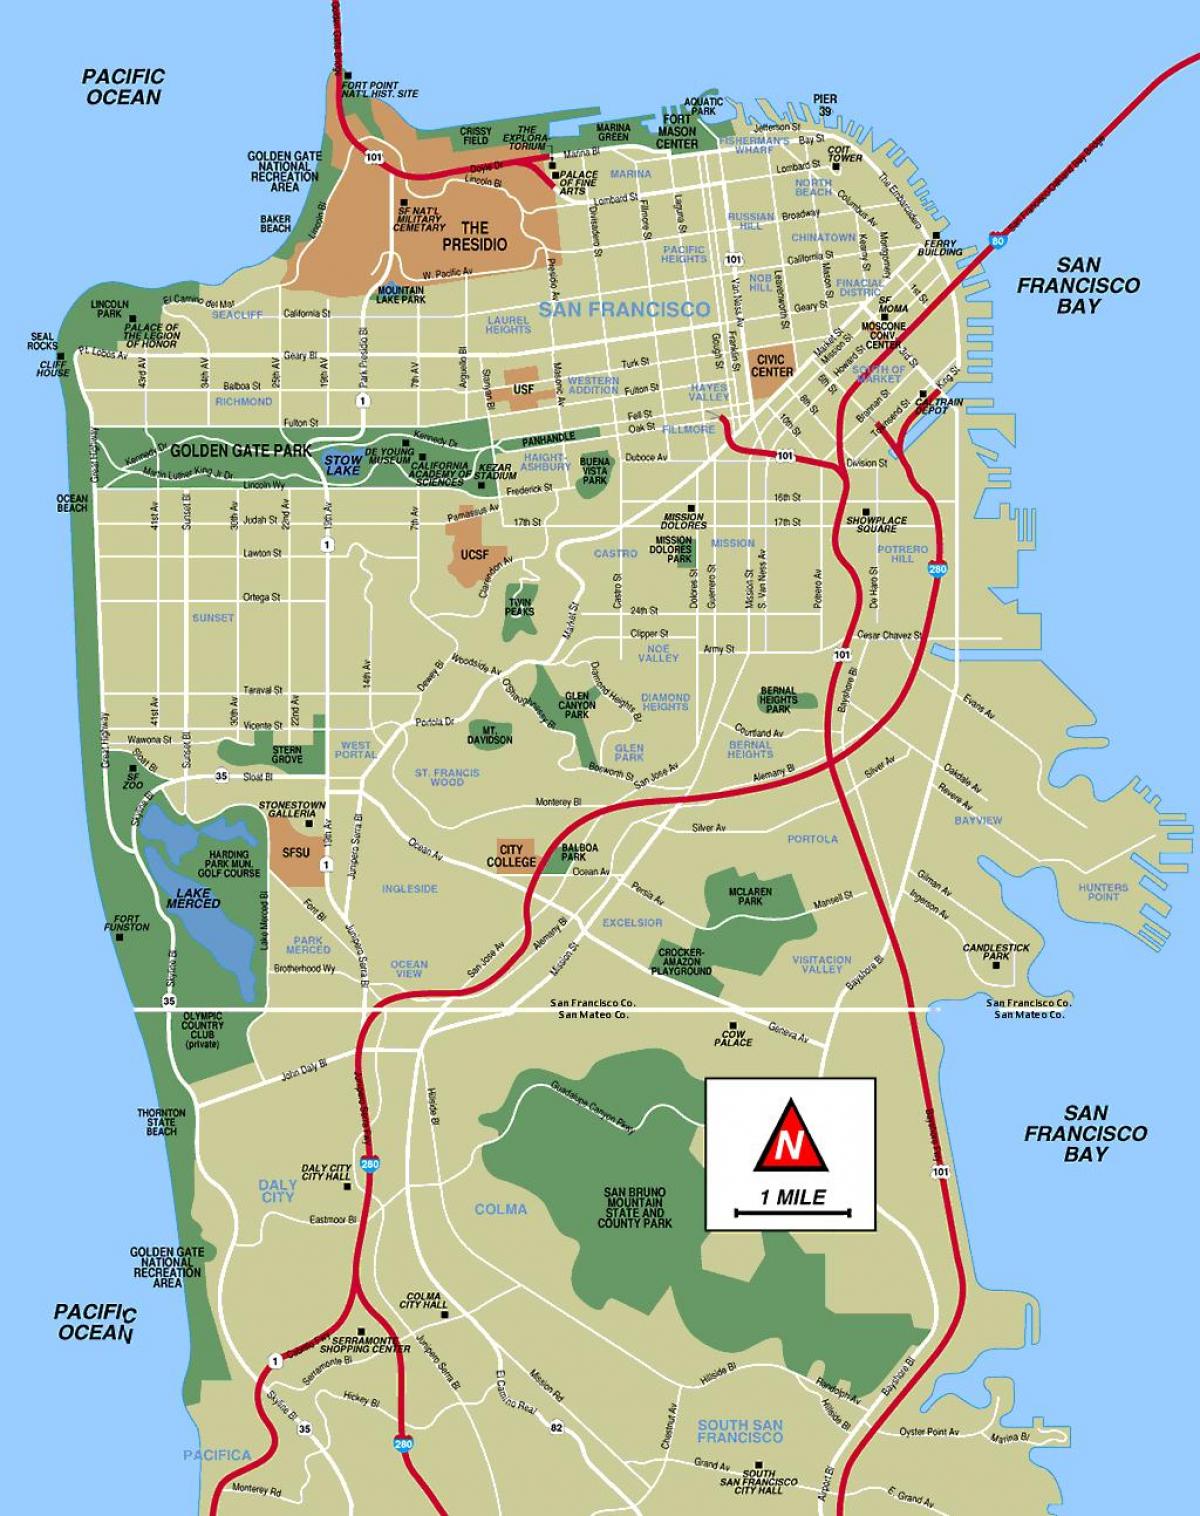 San Francisco harita çevrimdışı